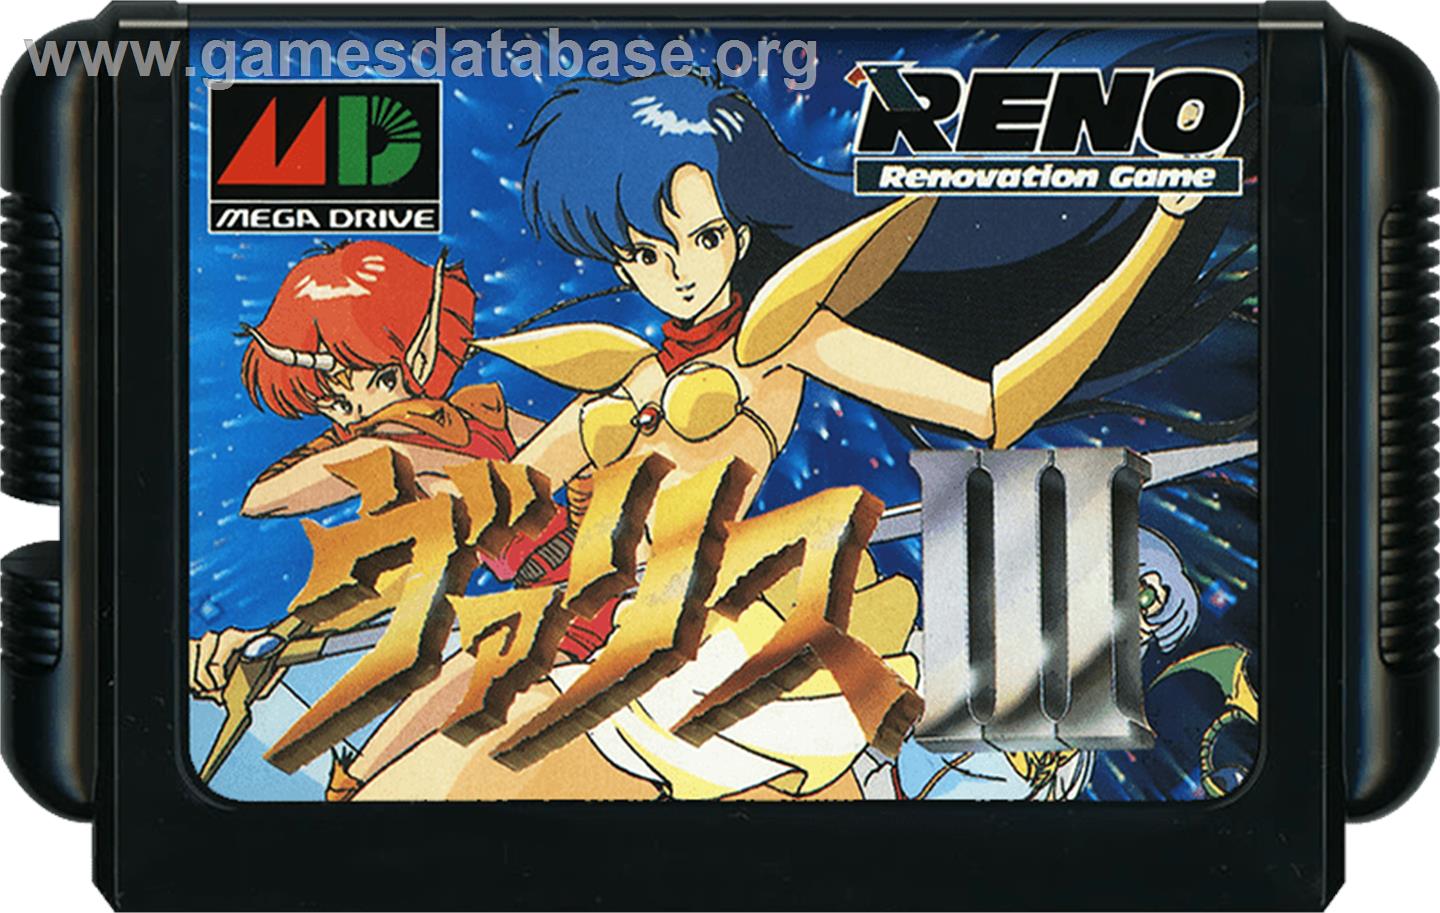 Valis 3 - Sega Genesis - Artwork - Cartridge